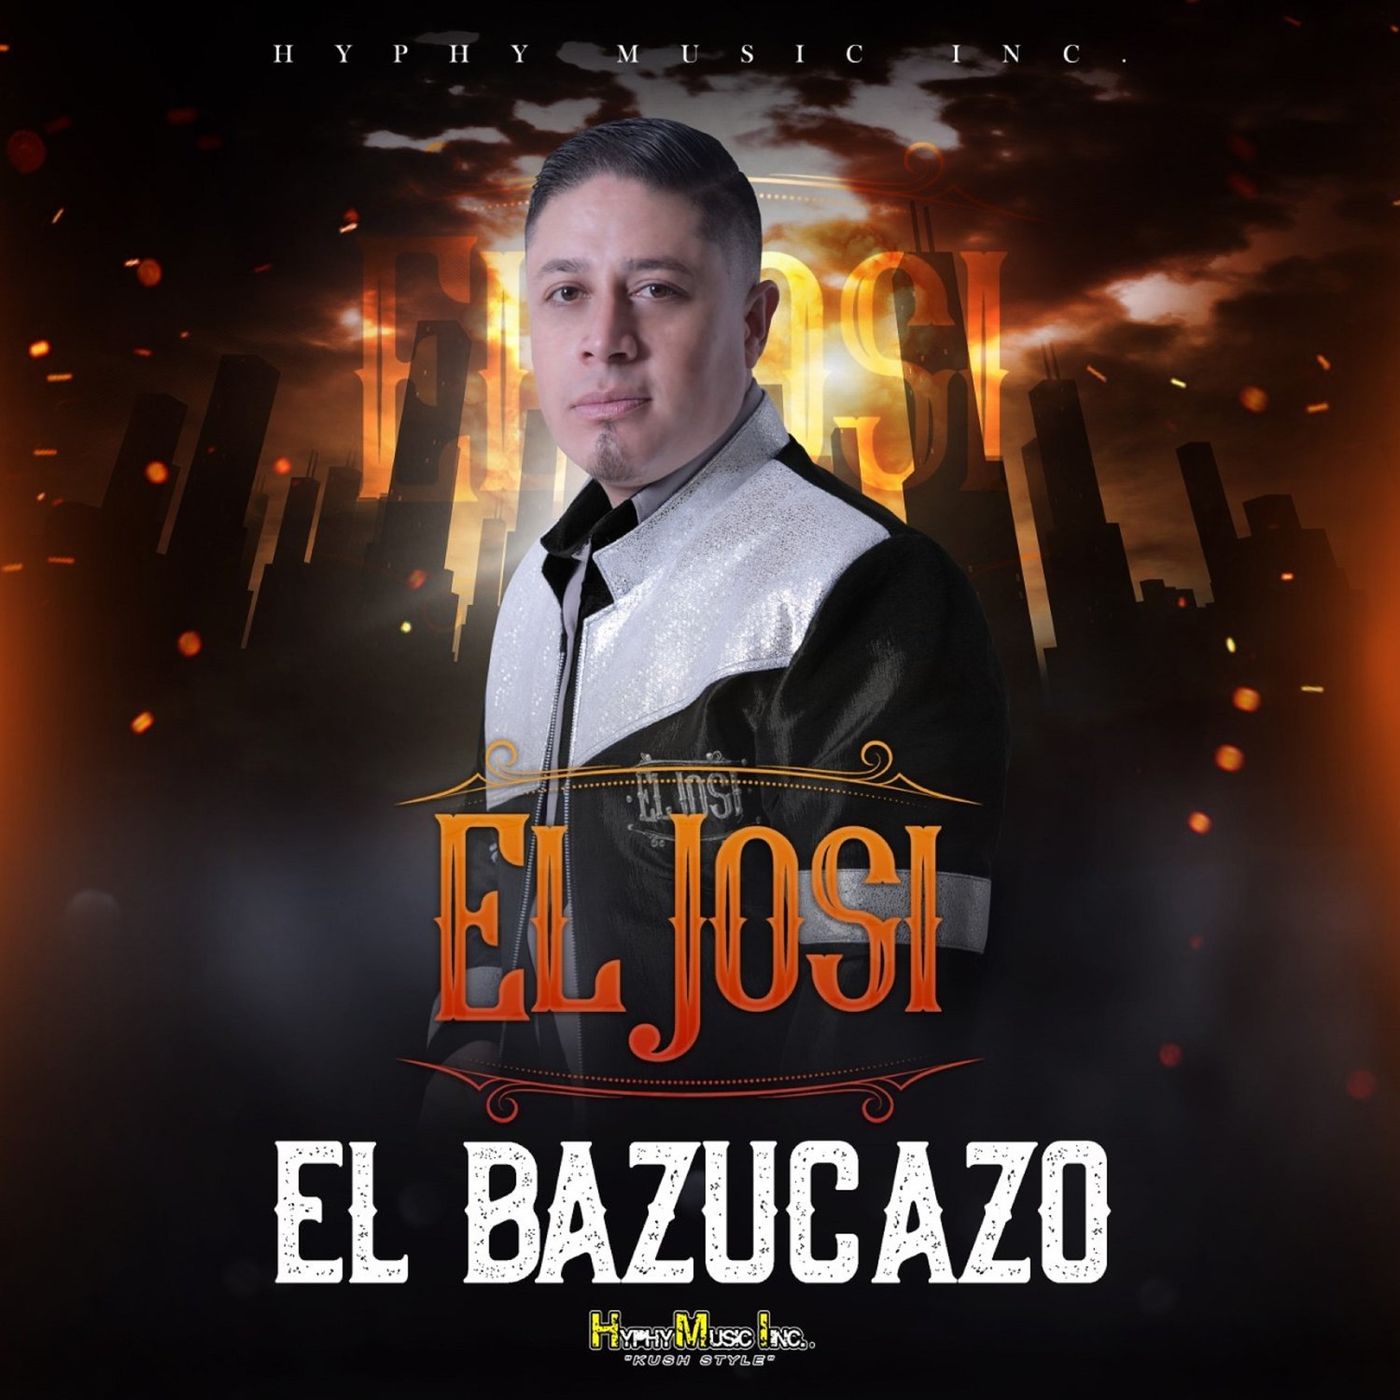 El Josi – El Bazucazo (Álbum 2020)